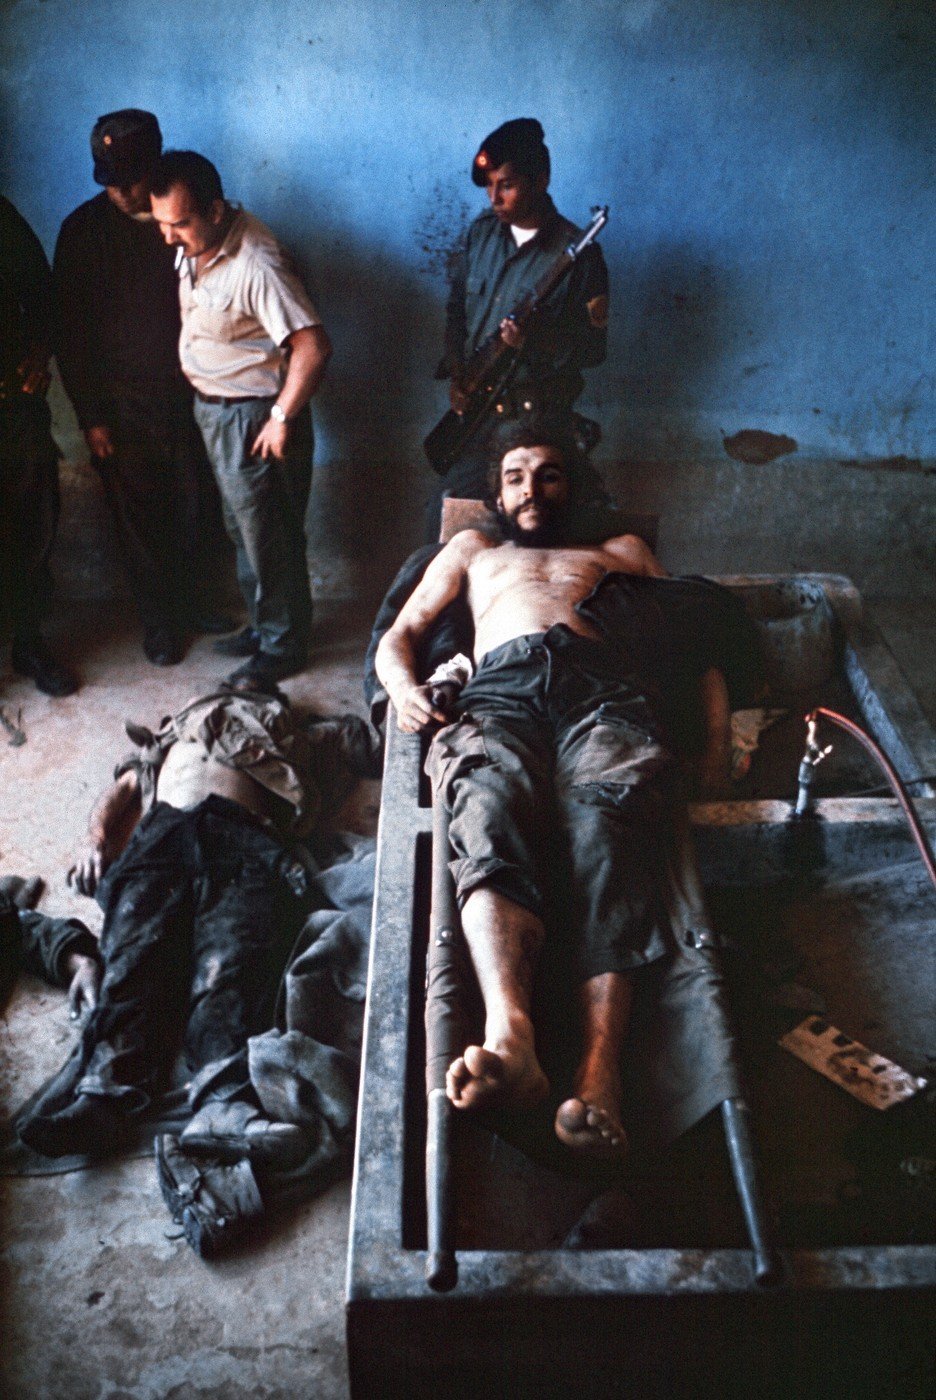 Fotografie zachycují Che Guevaru pár okamžiků po jeho popravě